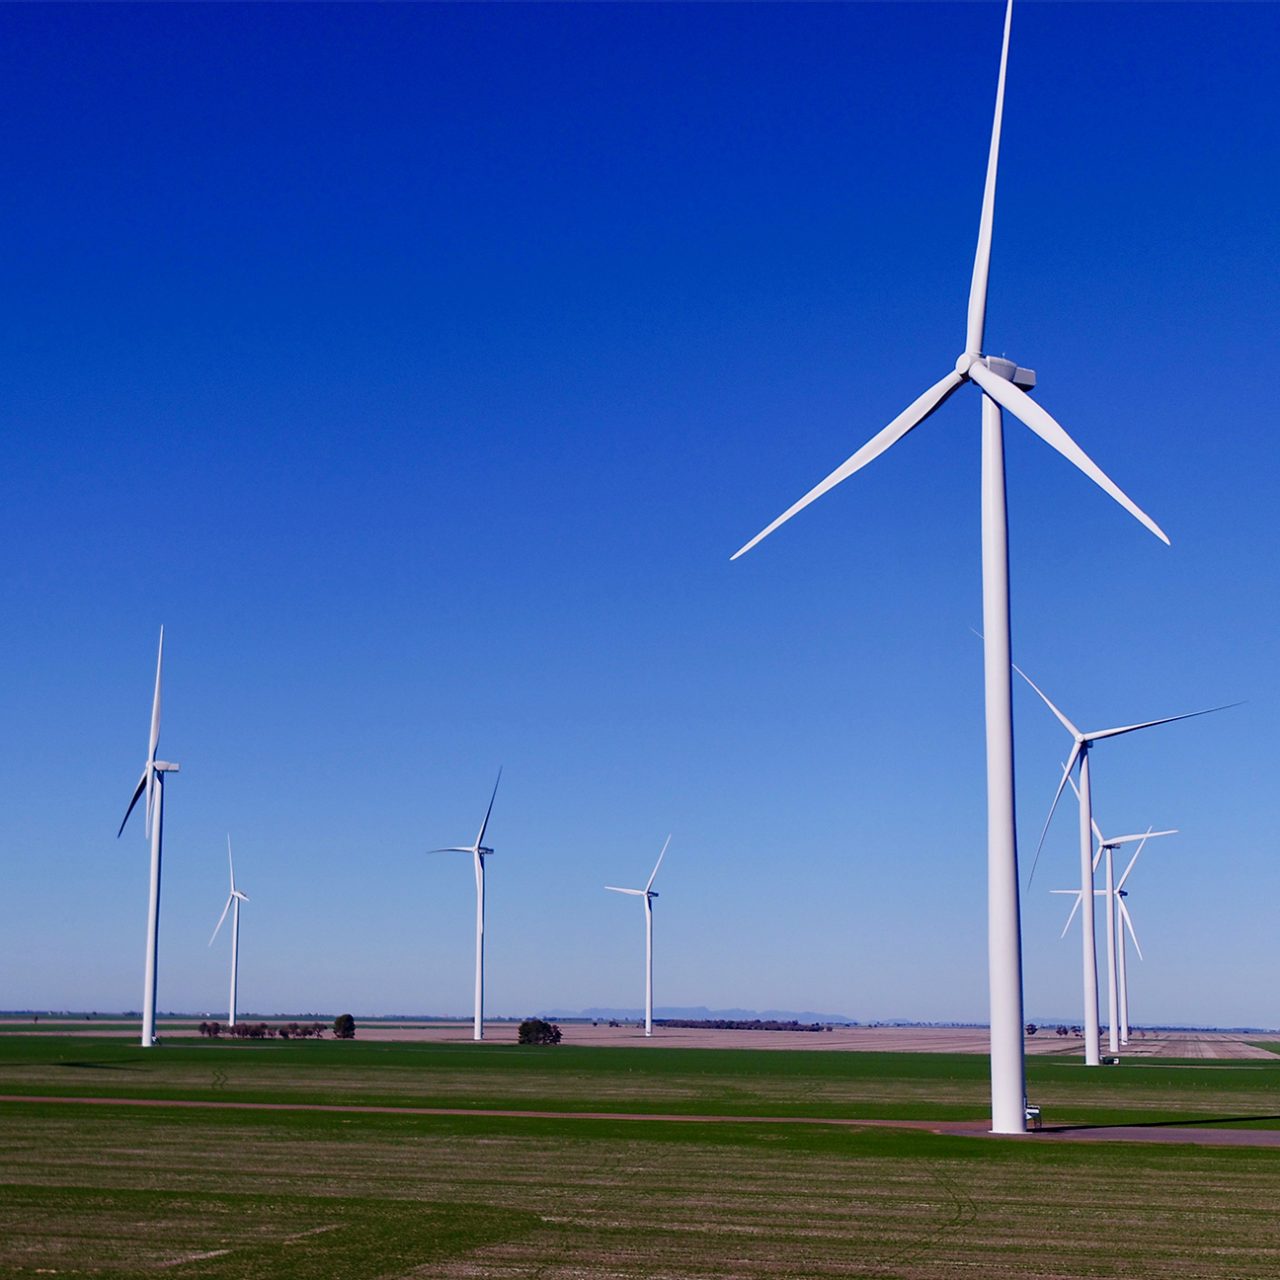 Murra Warra I wind turbines on green grass with bright blue sky